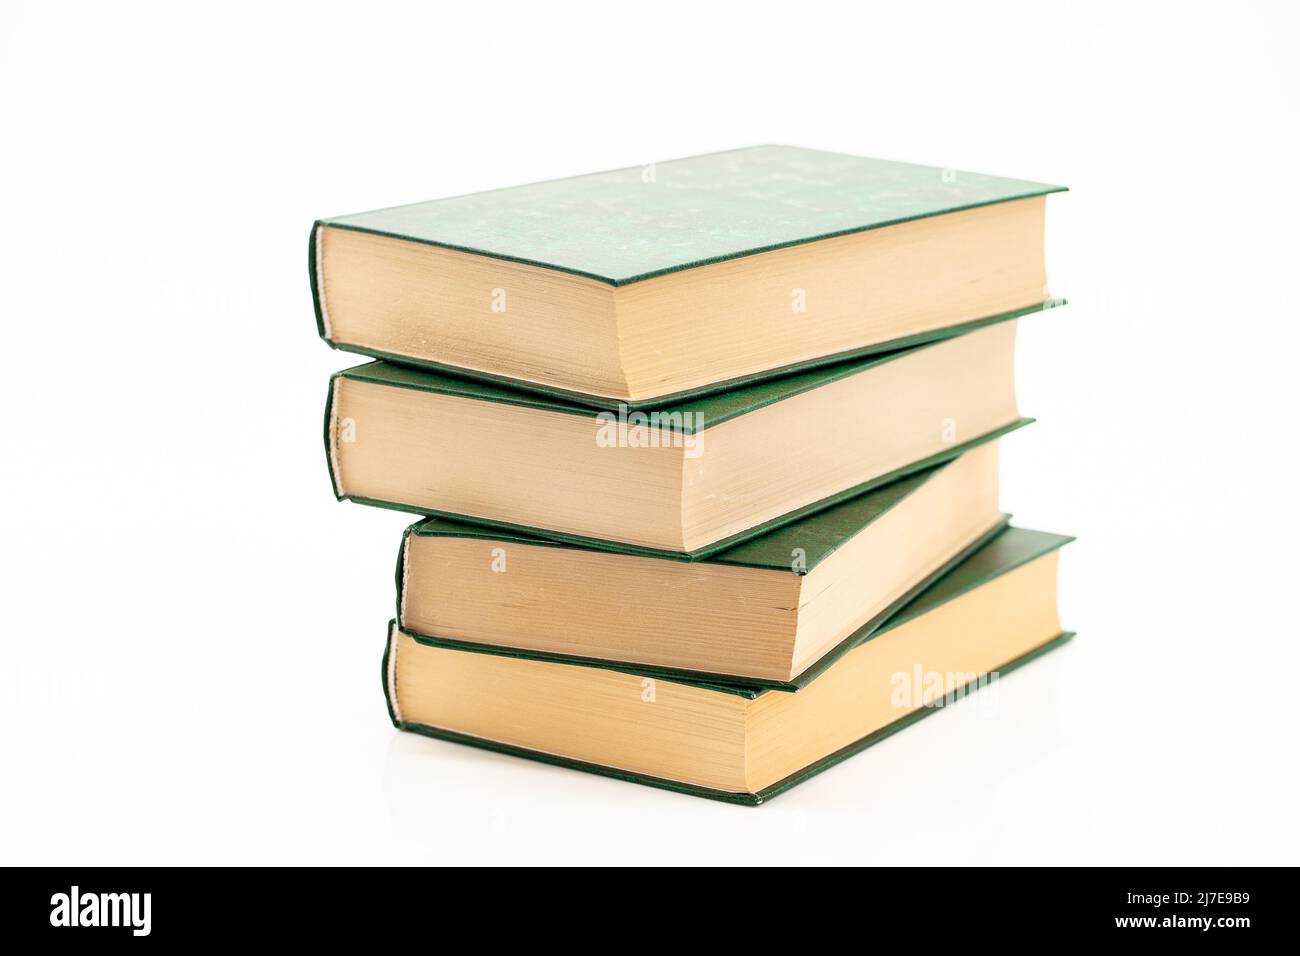 Lettura ed educazione. I libri si impilano con copertine verdi su sfondo bianco.lettura di libri. Concetto di conoscenza. Foto Stock